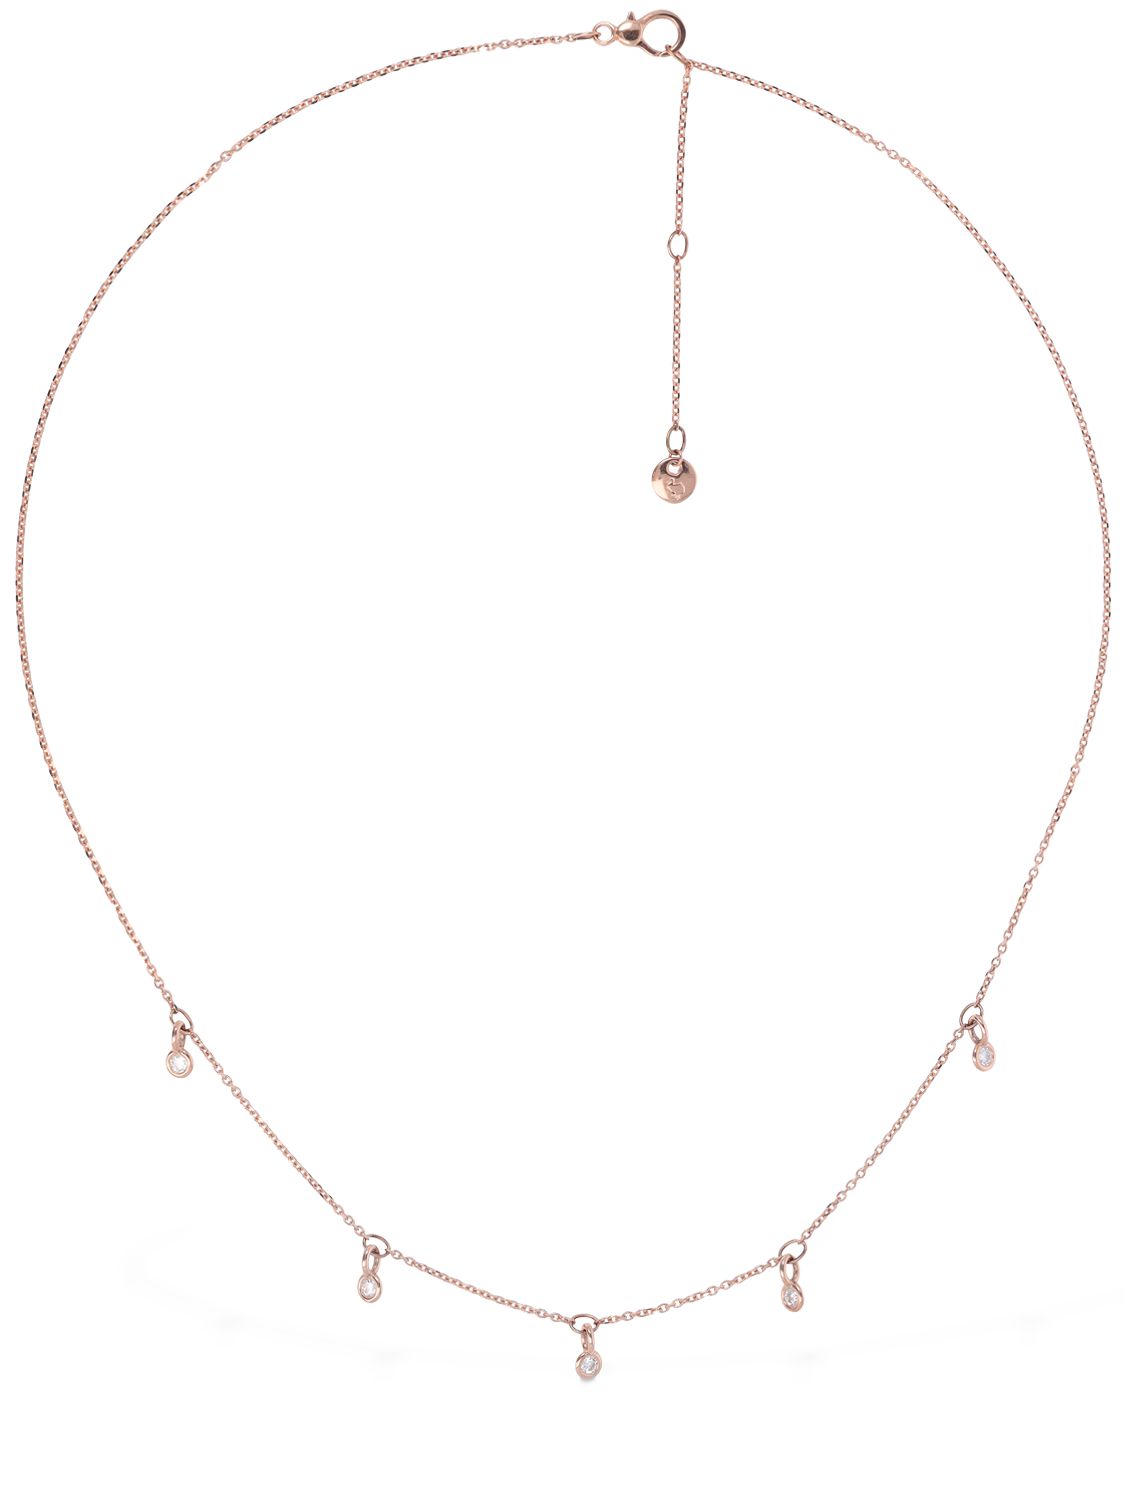 9kt Rose Gold & Diamond Necklace